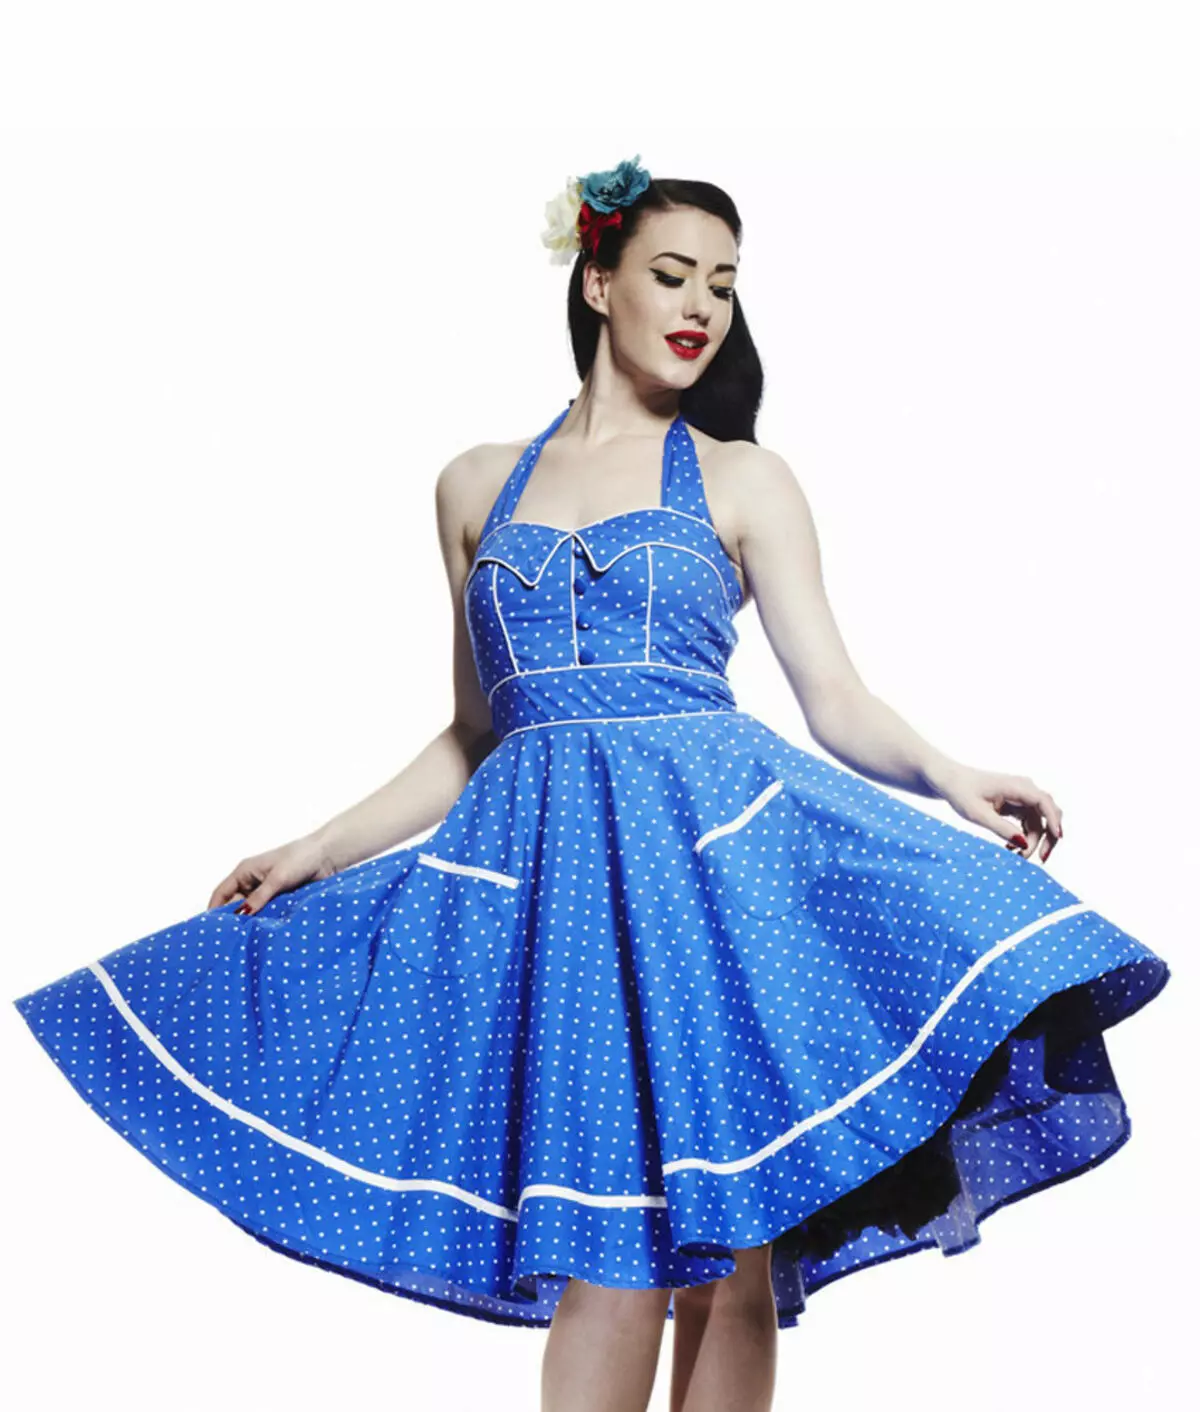 Blauwe jurk yn wite polka dot yn retro-styl